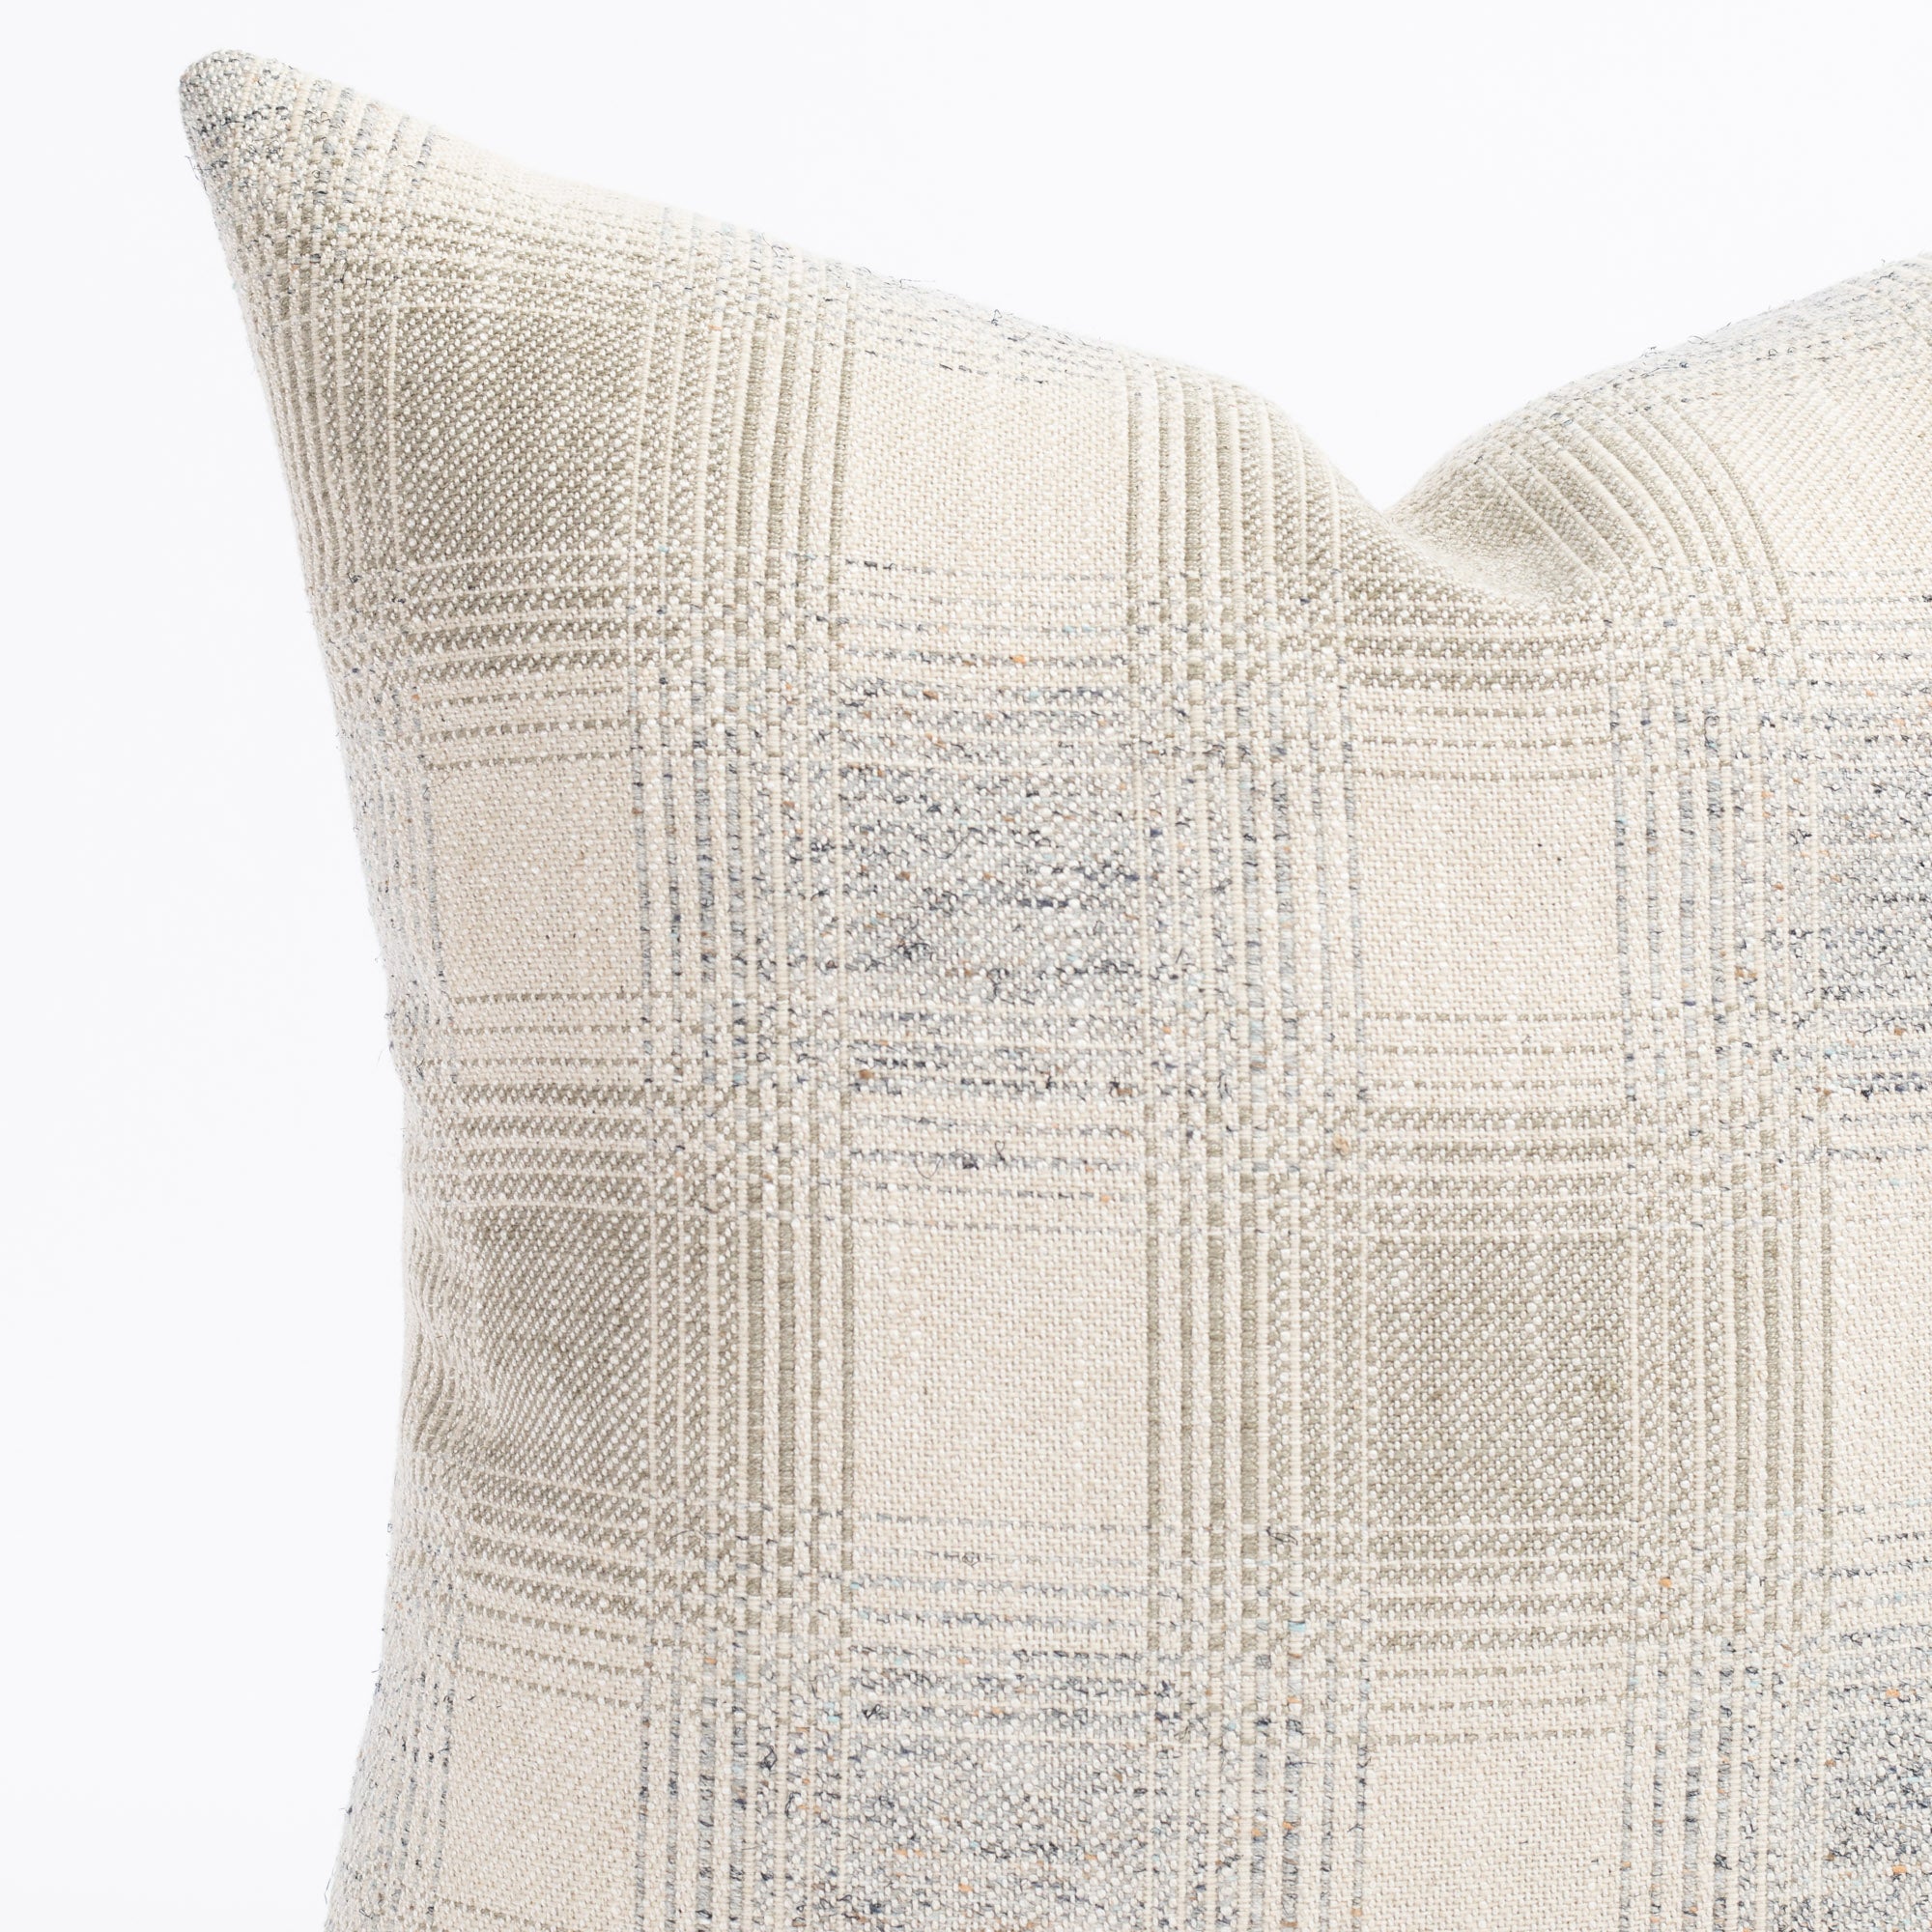 a light grey and denim blue plaid throw pillow : close up view